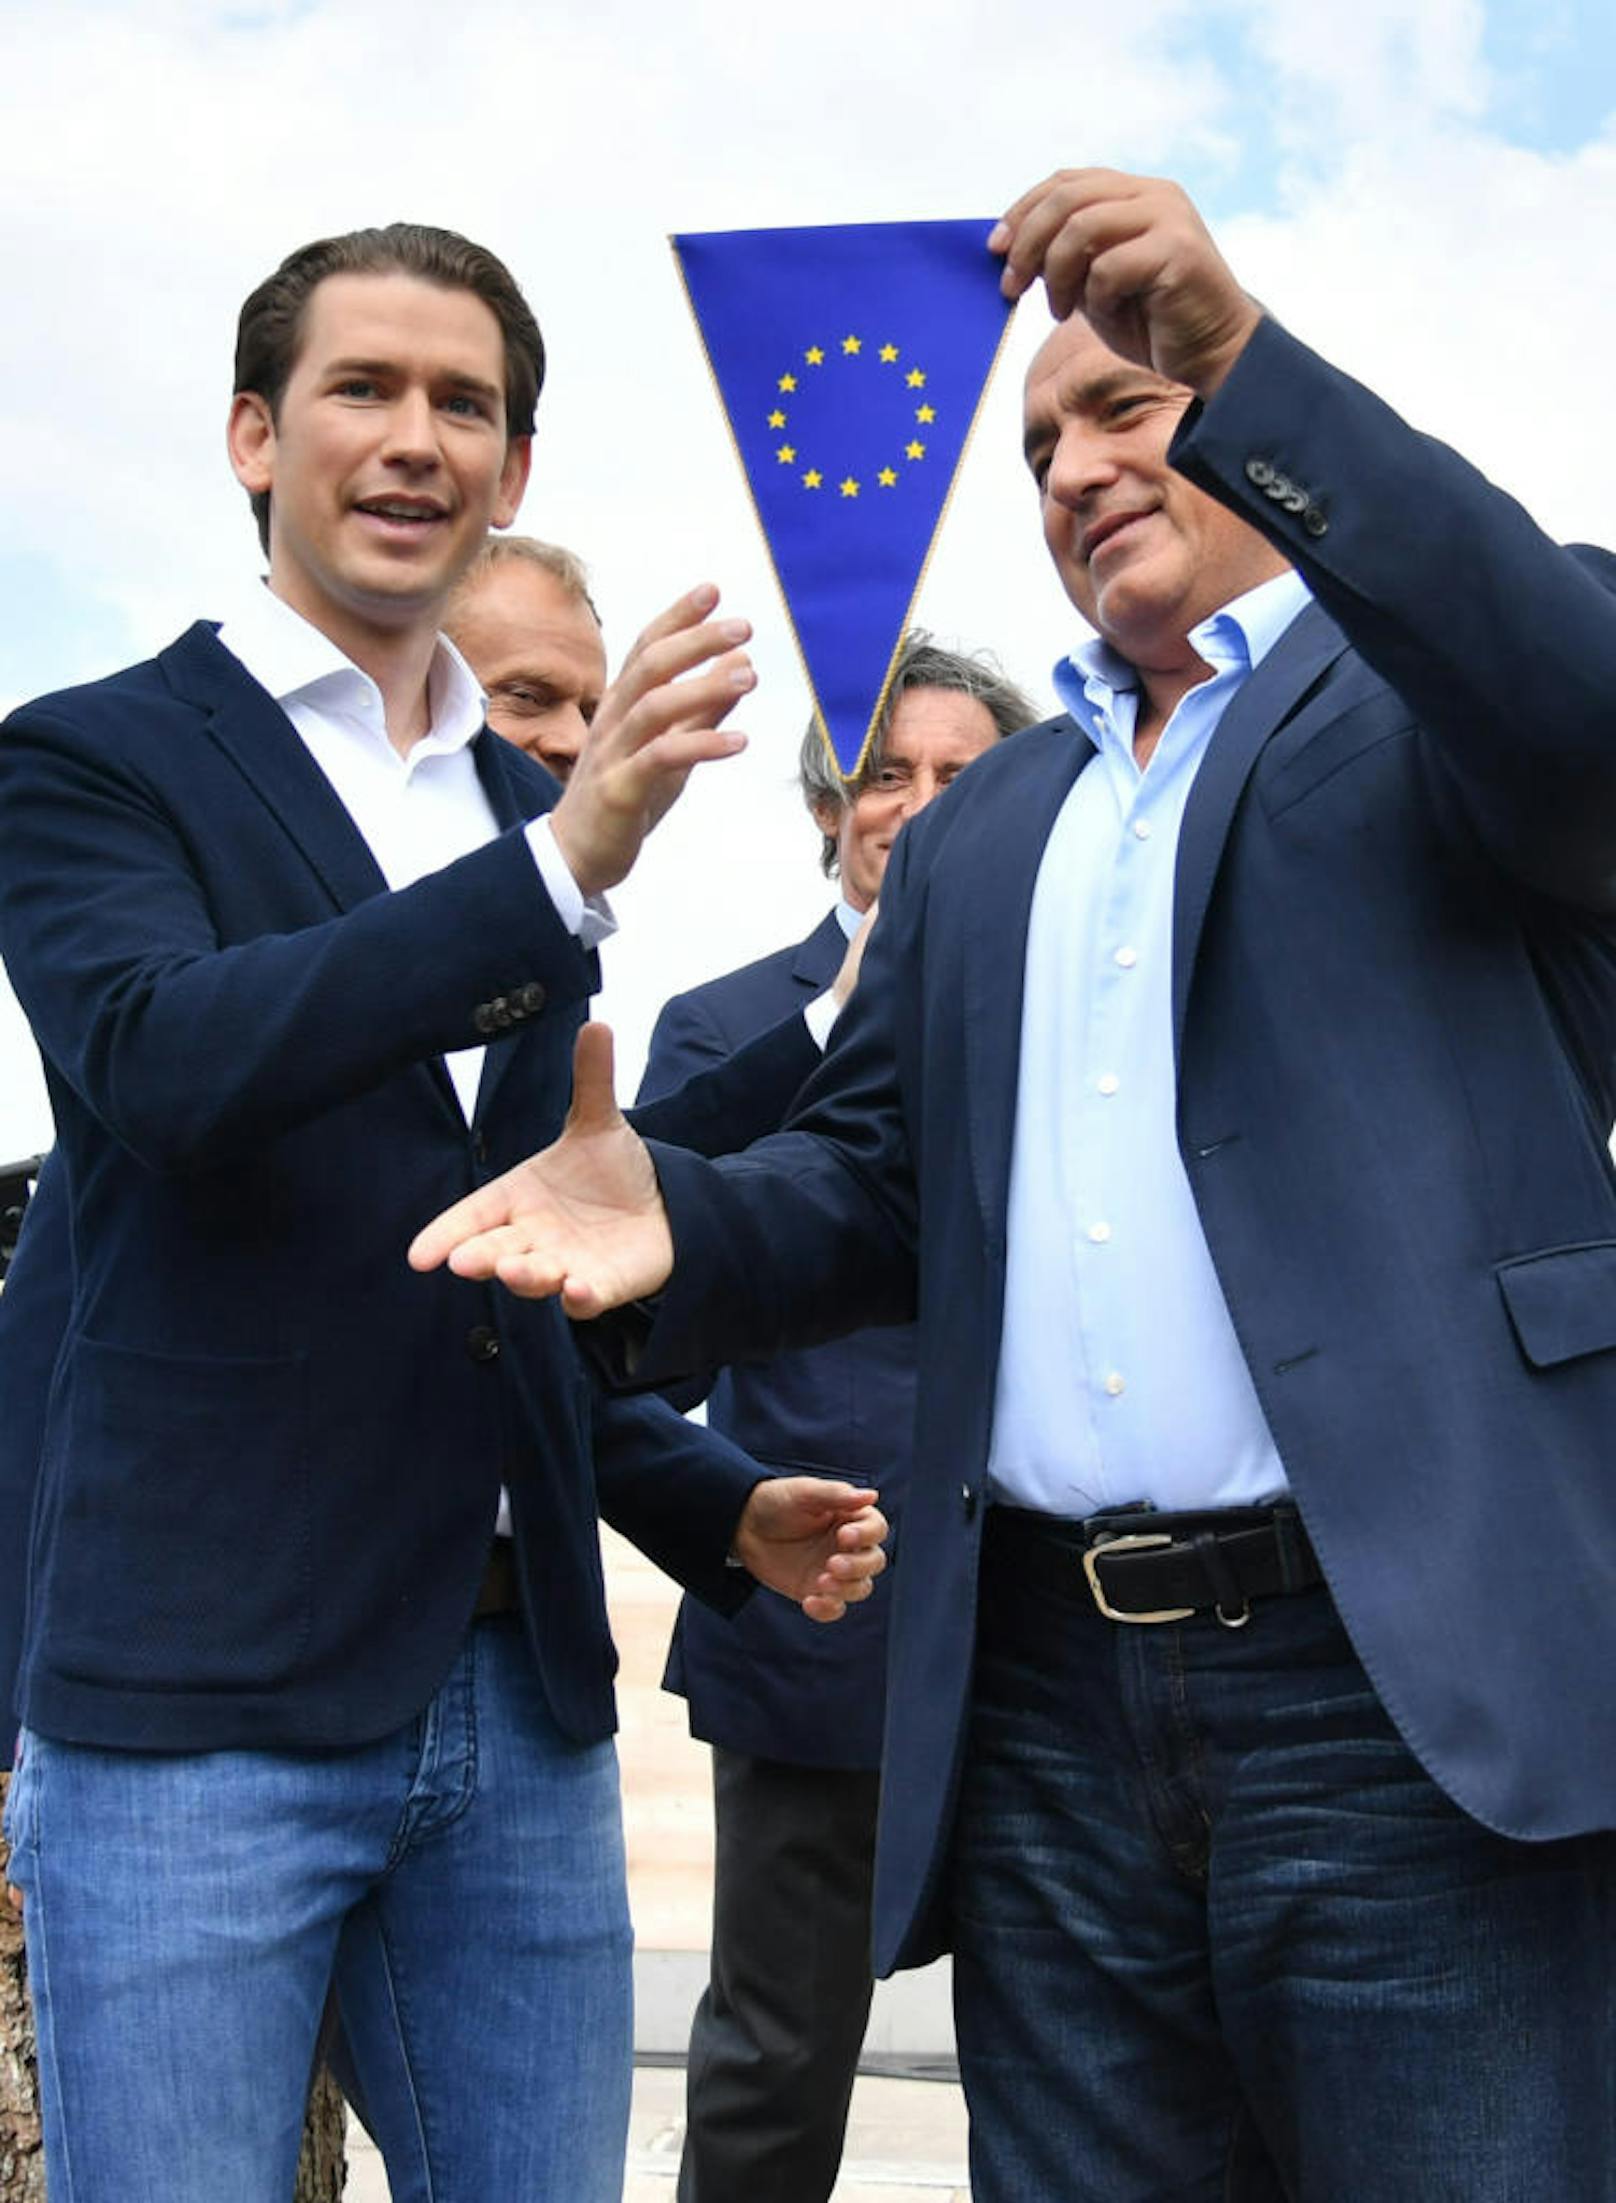 (v.l.) Bundeskanzler Sebastian Kurz (ÖVP), Ratspräsident Donald Tusk, der bulgarische Premierminister Bojko Borissow beim Auftakt des österreichischen EU-Ratsvorsitzes am Samstag, 30. Juni 2018 in Schladming mit der symbolische Übergabe des EU-Ratsvorsitzes von Bulgarien an Österreich.